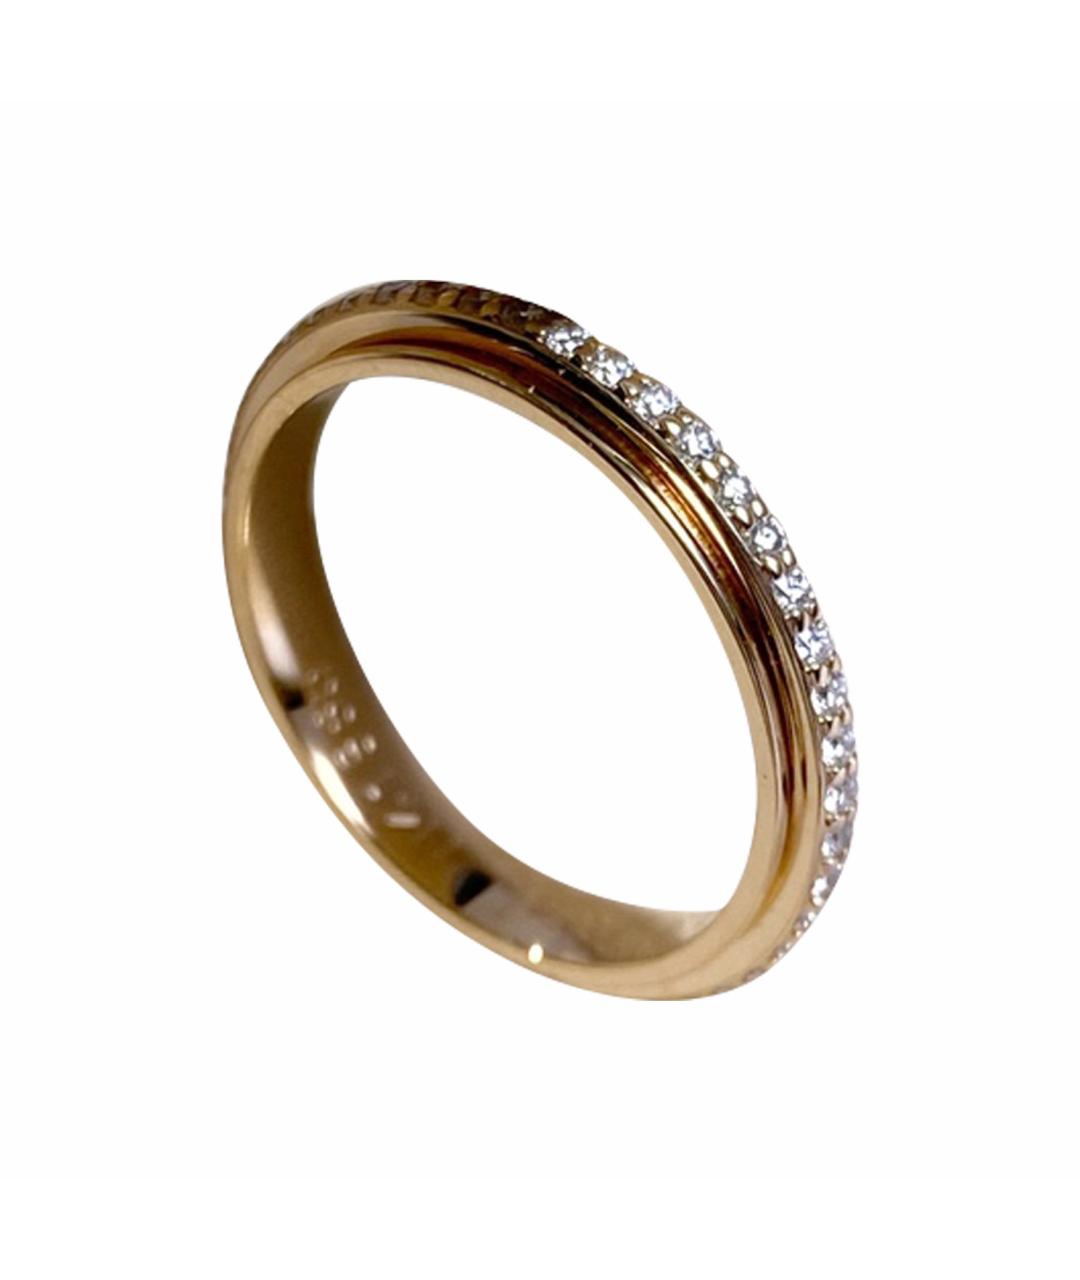 PIAGET Золотое кольцо из розового золота, фото 1